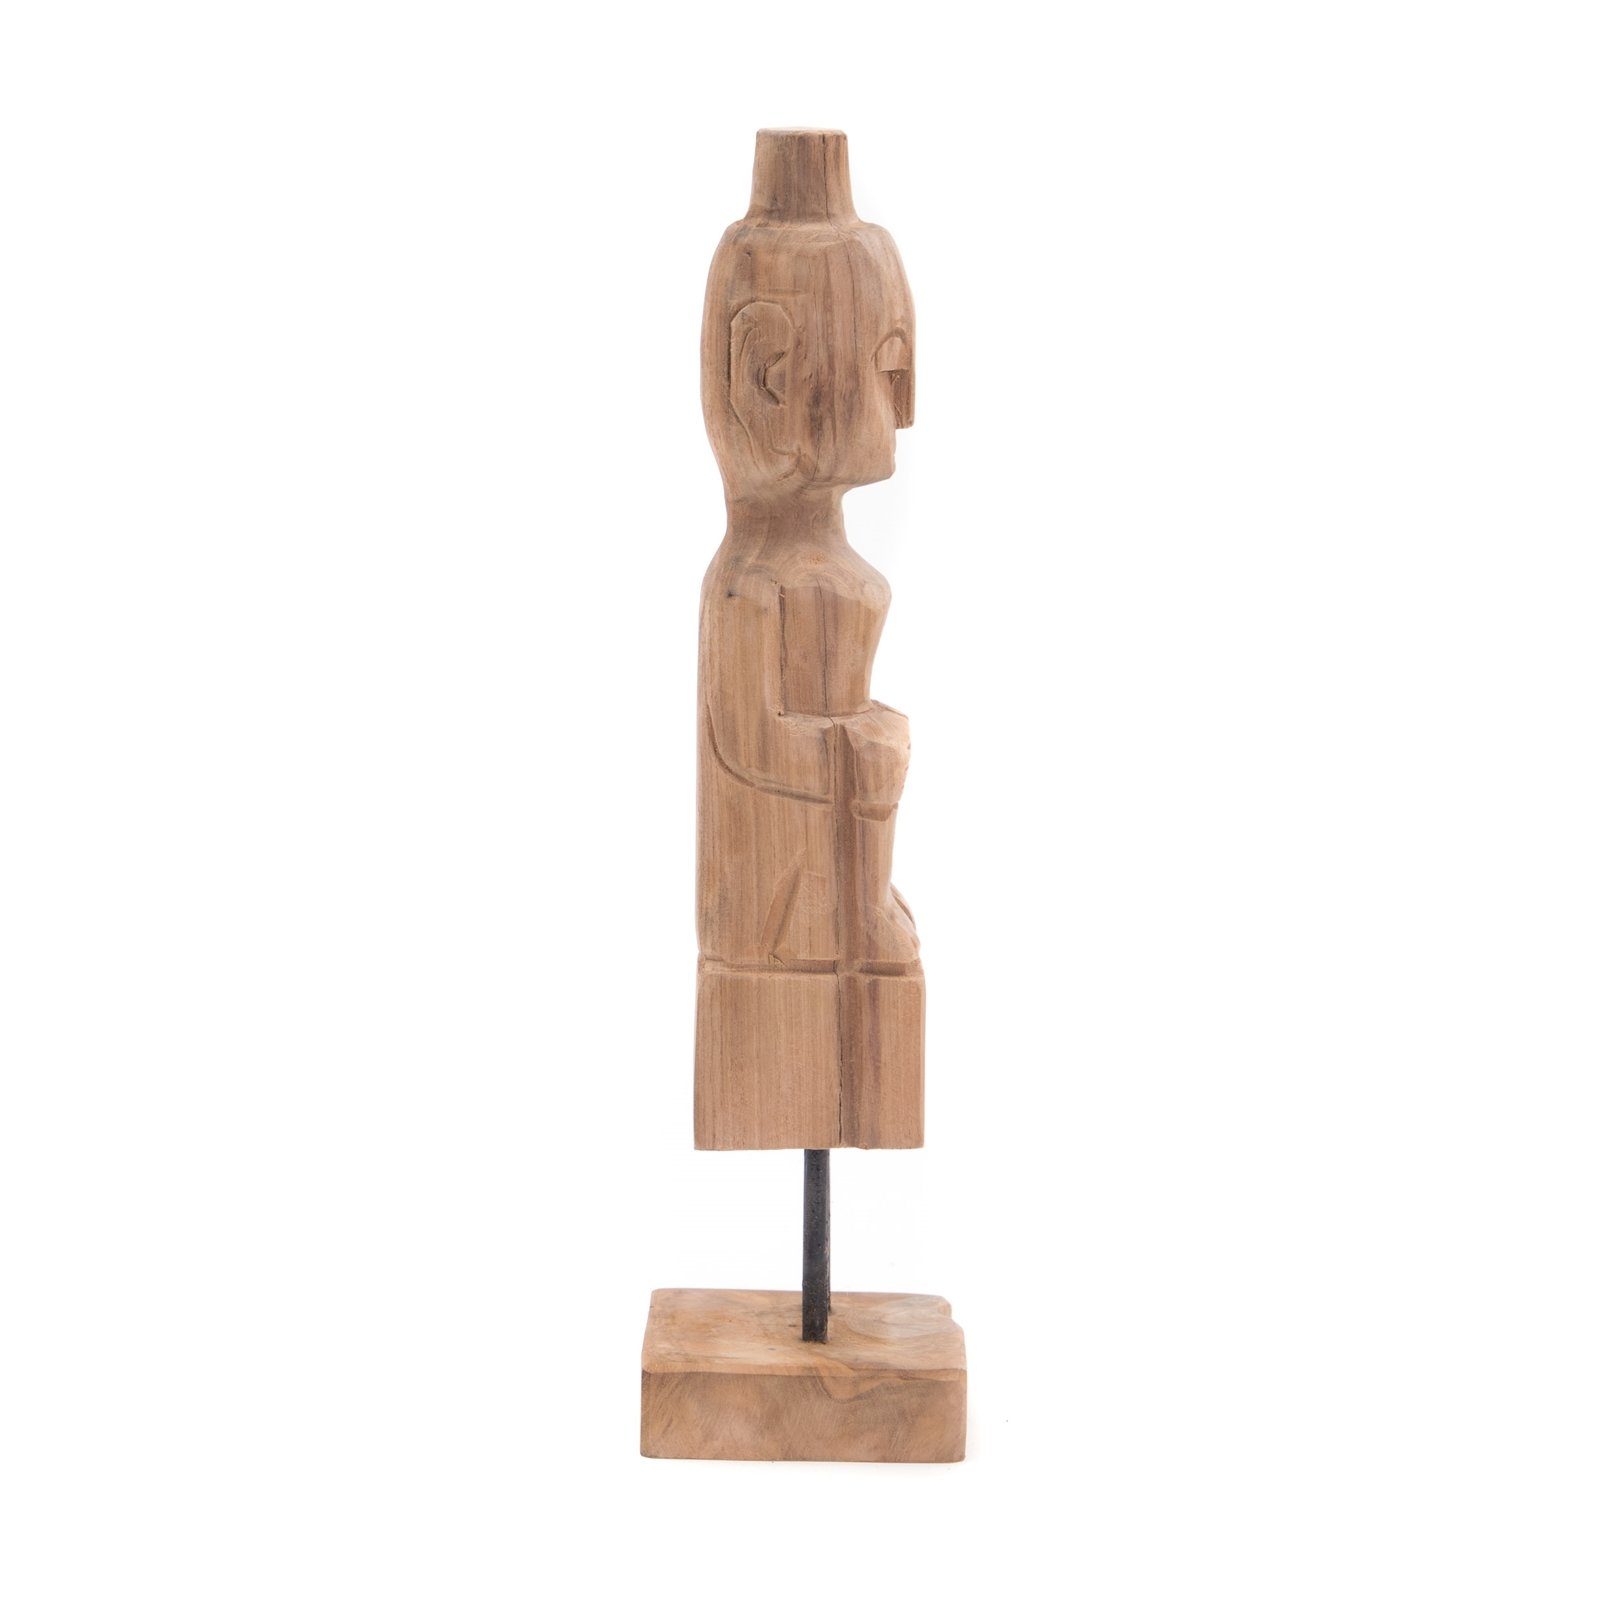 CREEDWOOD Skulptur TEAK Teakholz, FIGUR Holz MIT HUT Figur II", "PRIMITIVO